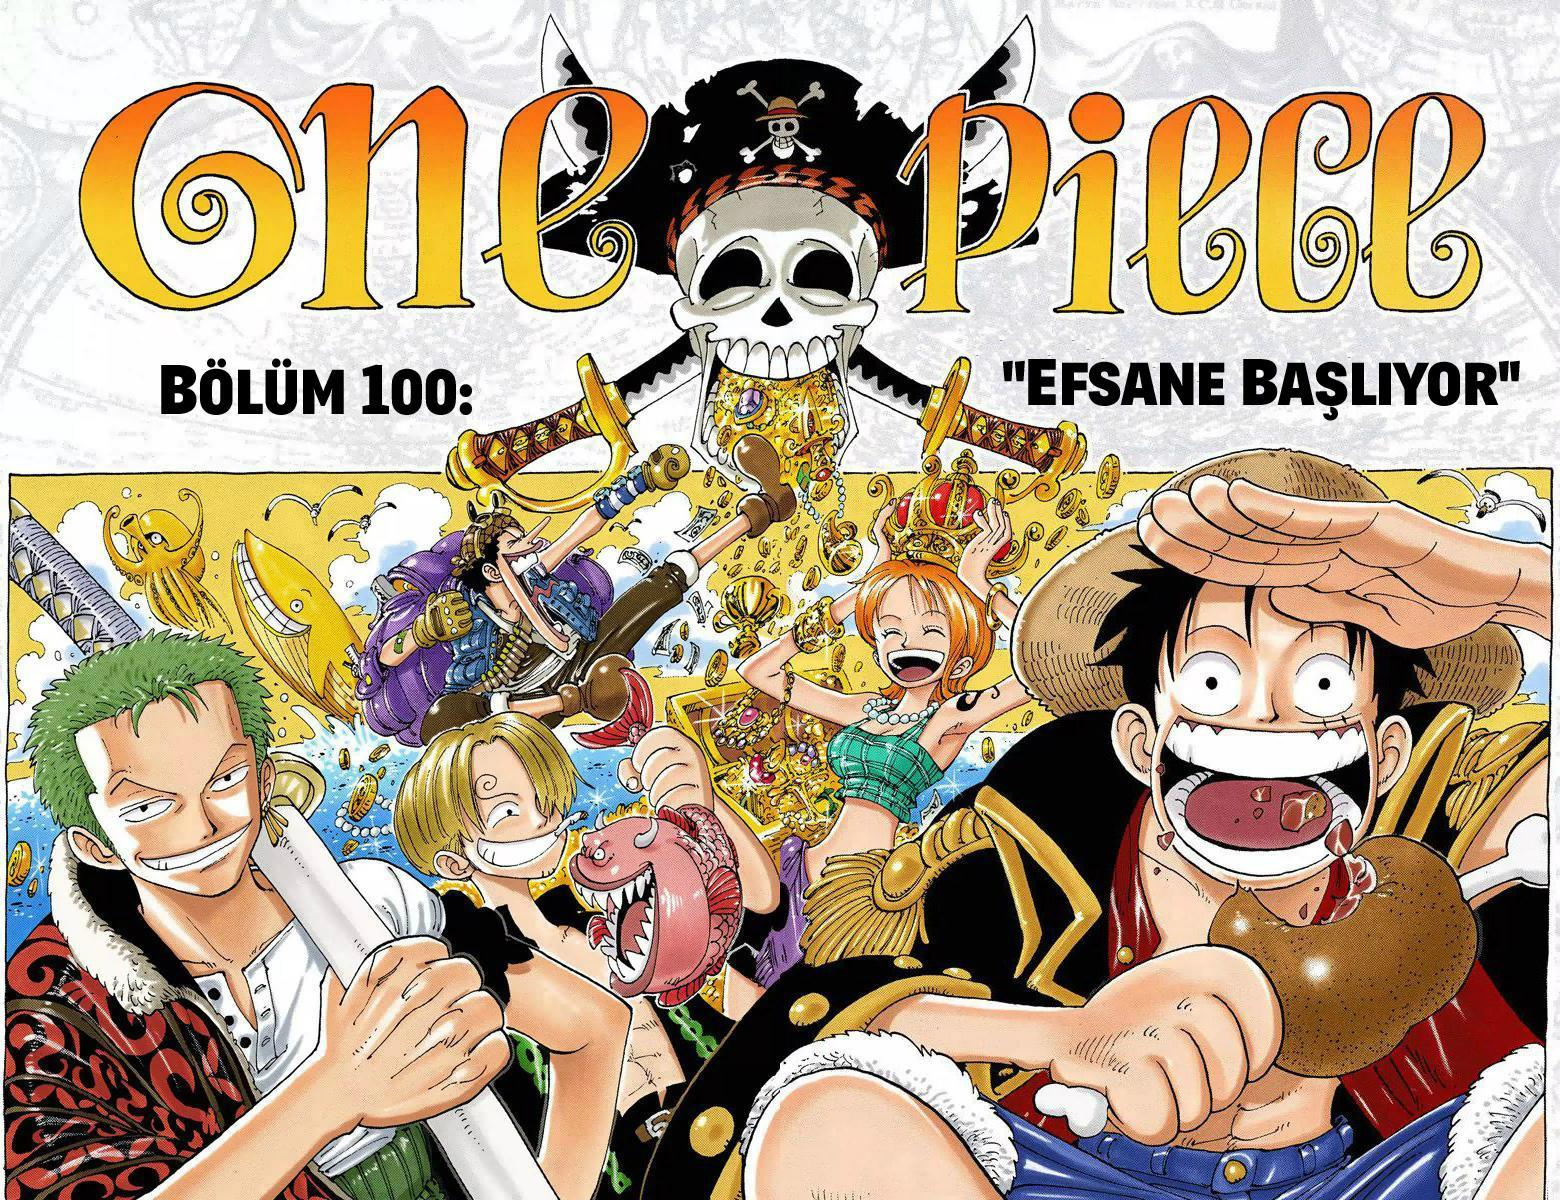 One Piece [Renkli] mangasının 0100 bölümünün 3. sayfasını okuyorsunuz.